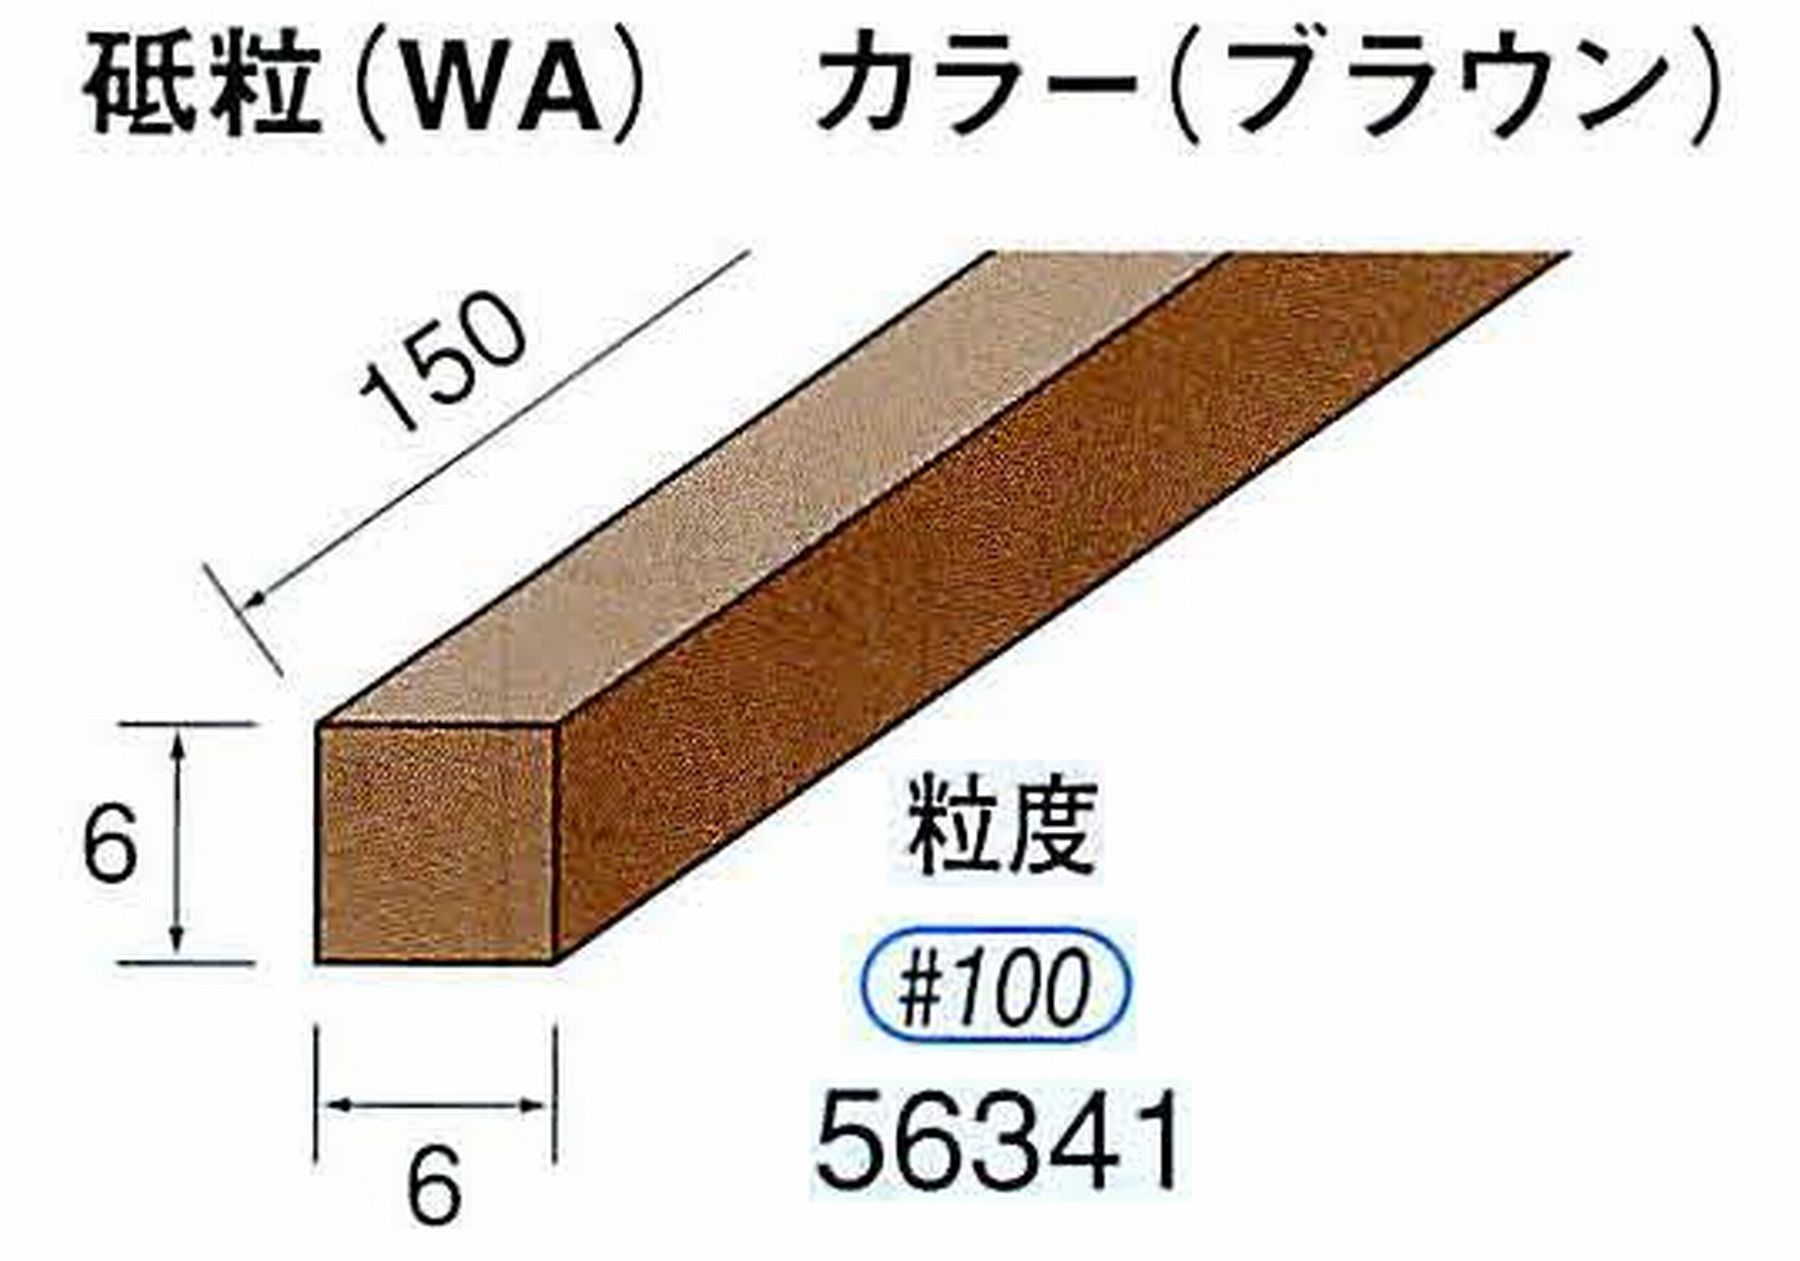 ナカニシ/NAKANISHI スティック砥石 ブラウン・フィニッシュシリーズ 砥粒(WA) 56341